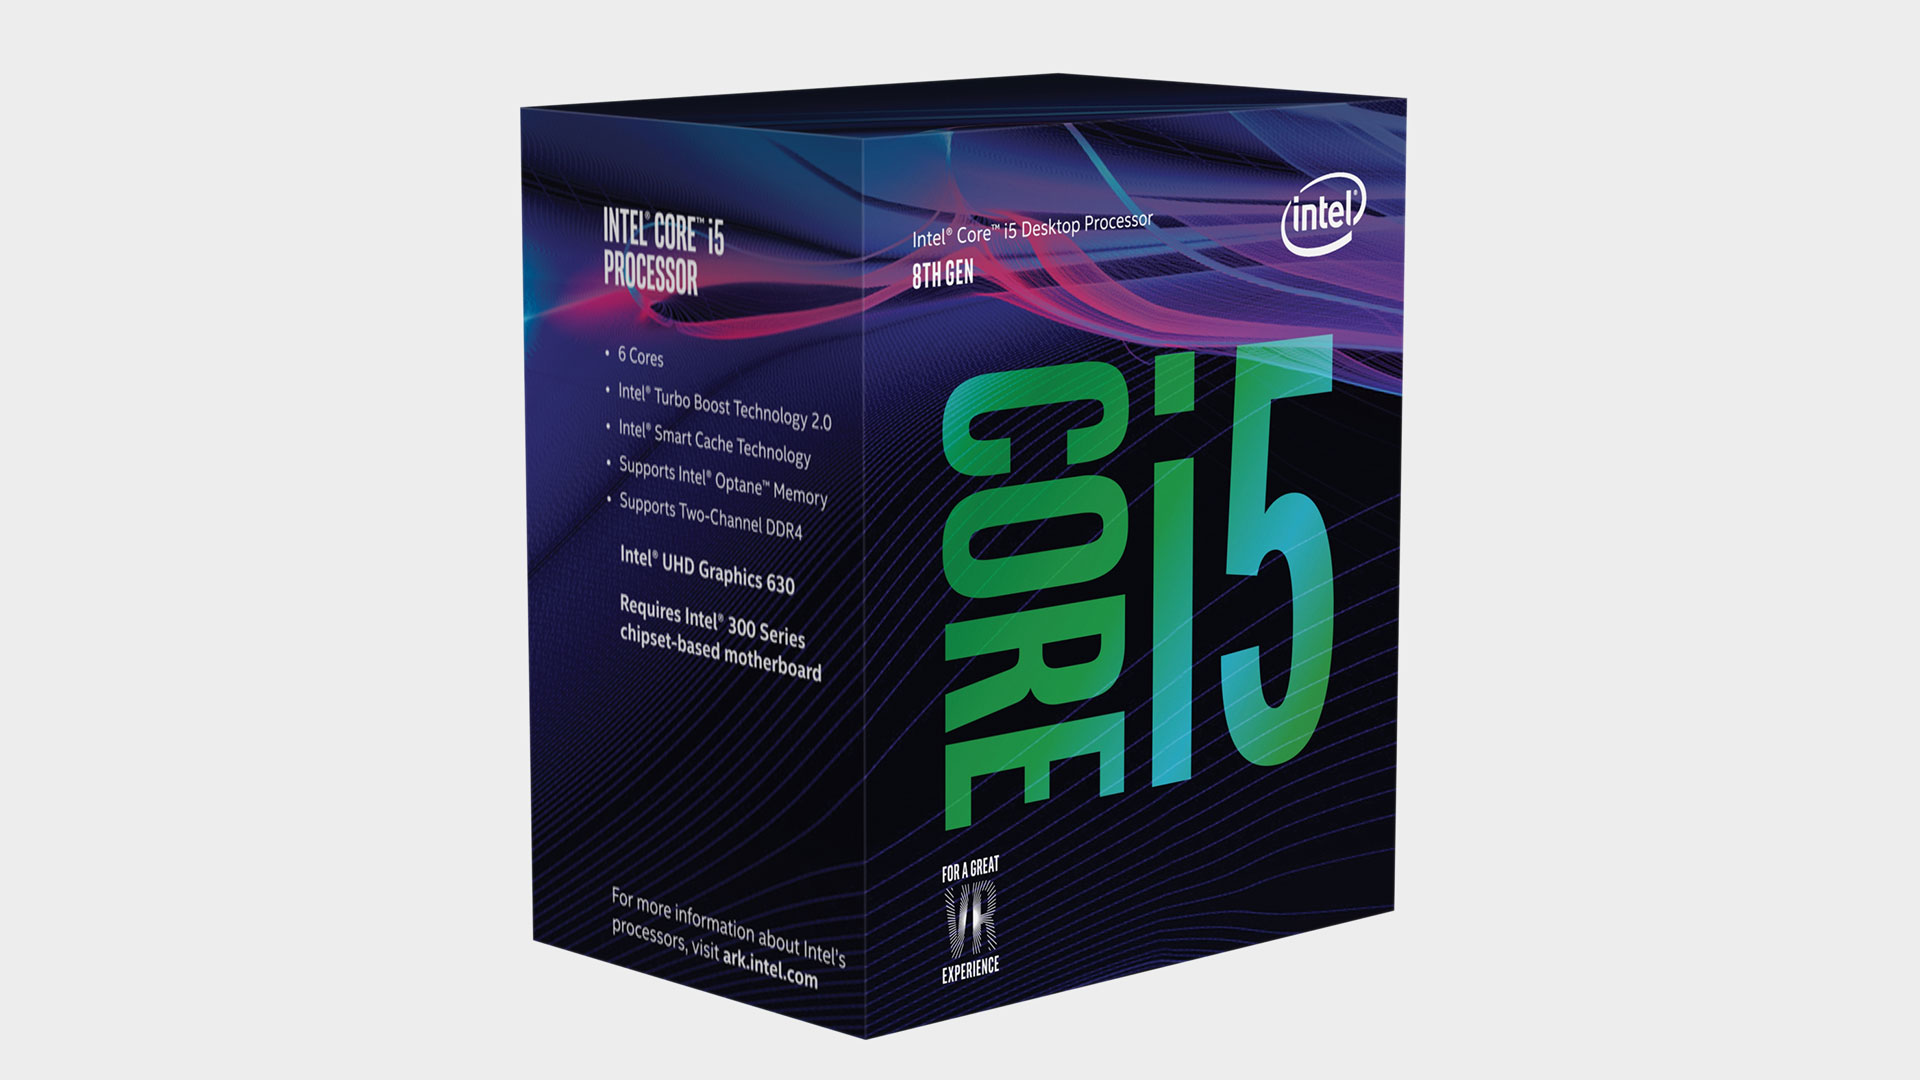  Should I buy an Intel Core i5 8400 CPU? 